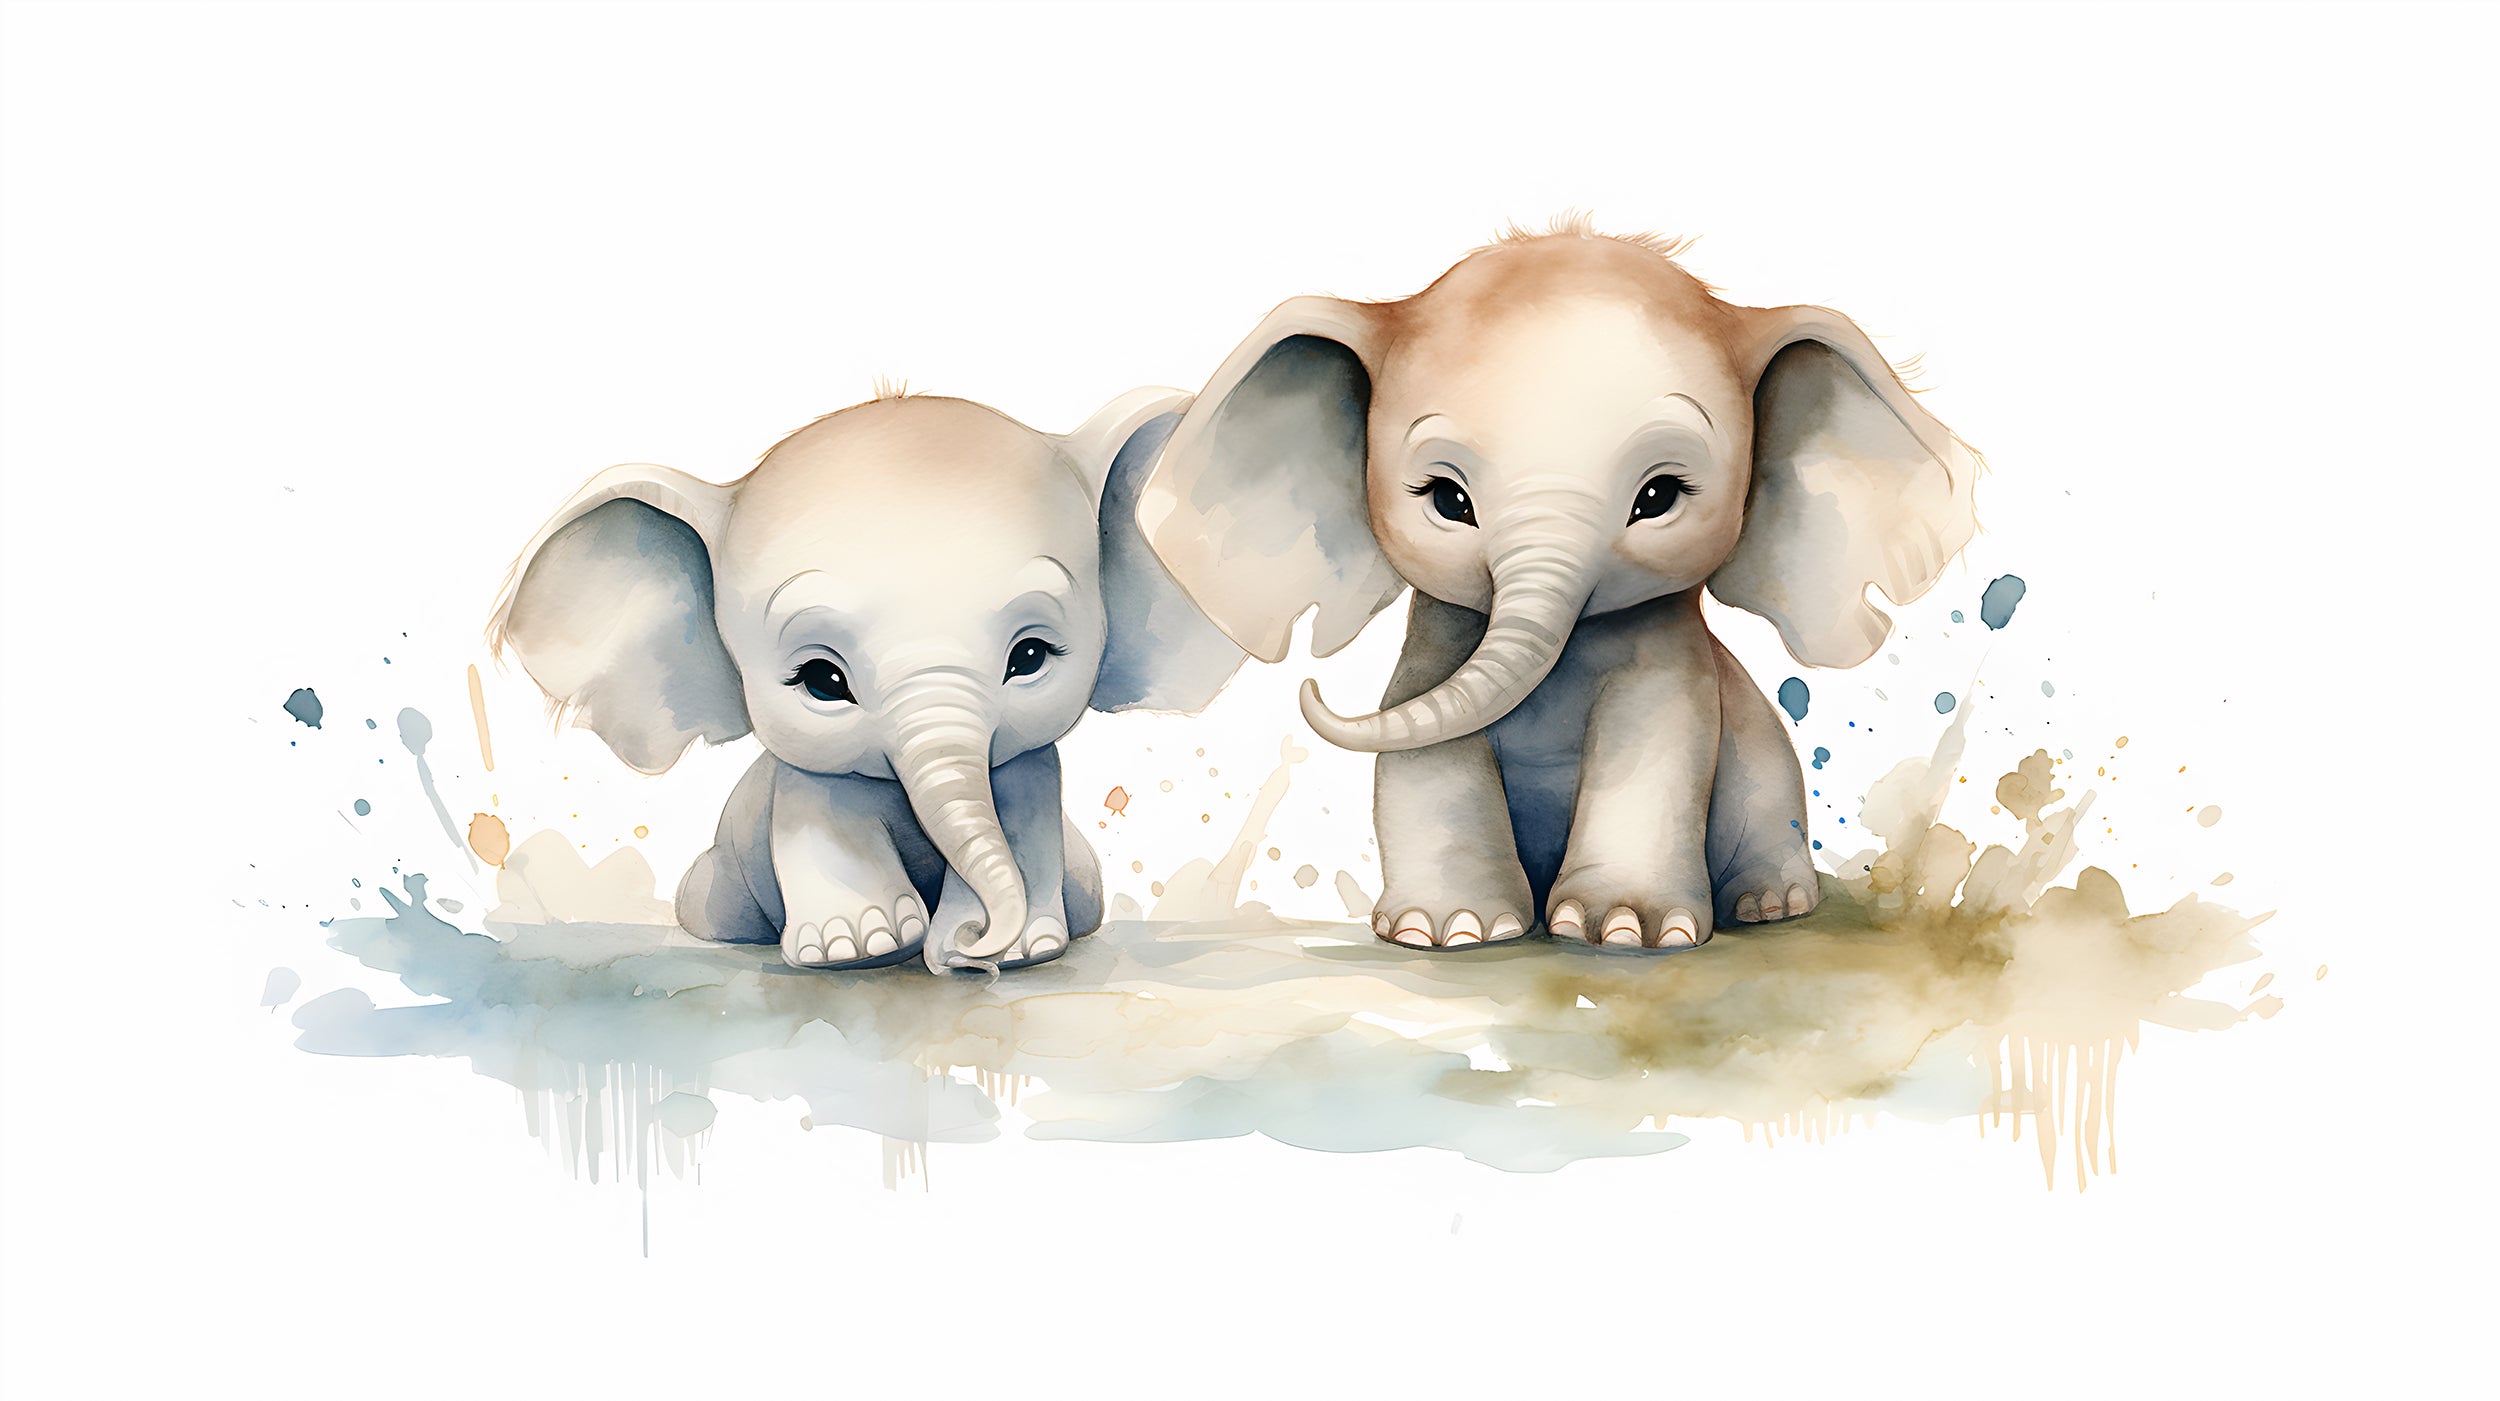 Adorable Baby Elephants Wall Decal